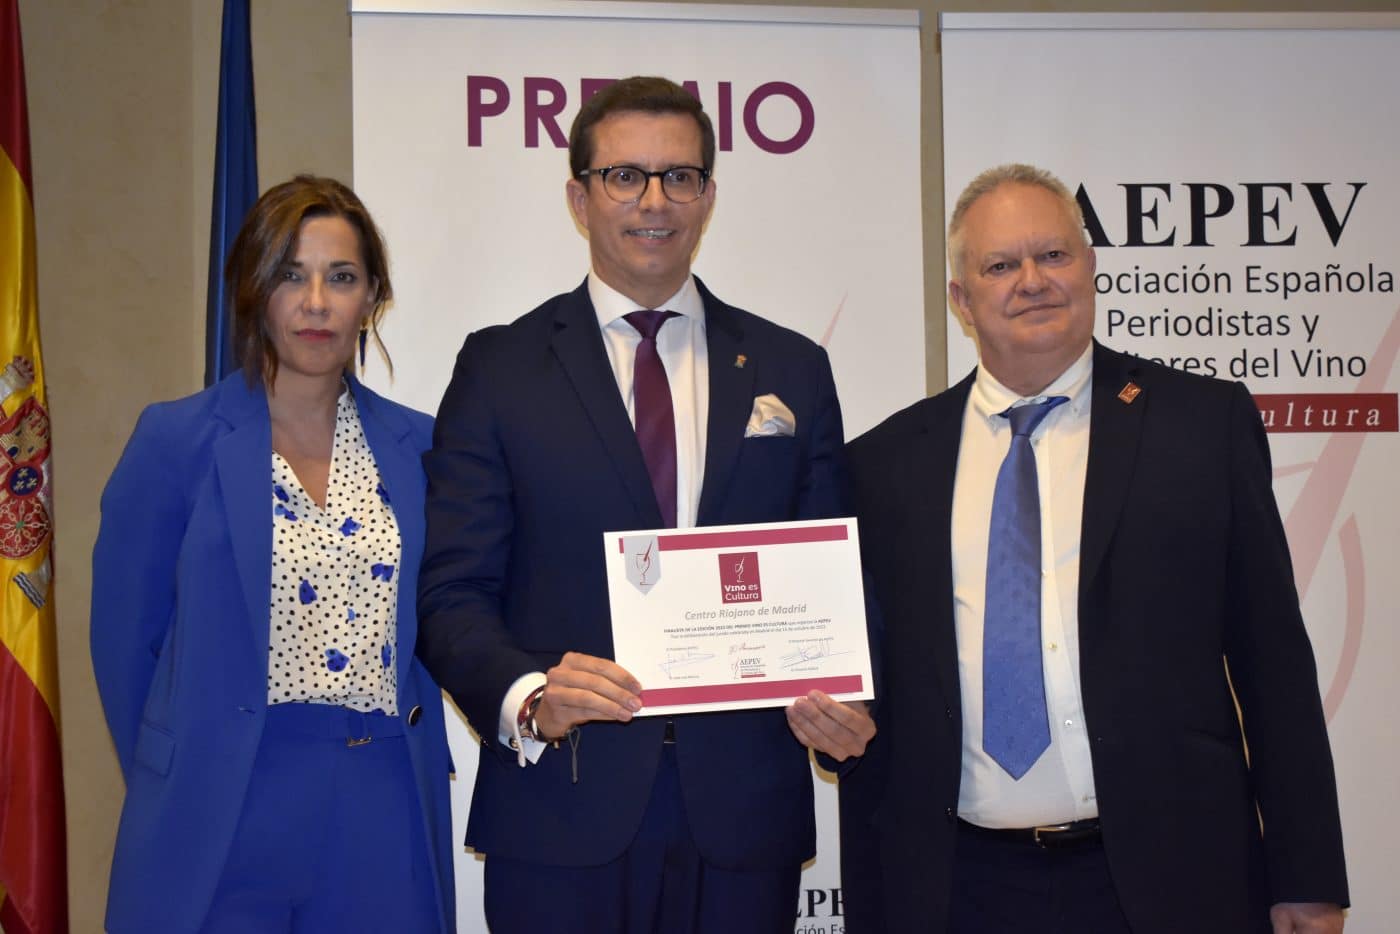 La Asociación Española de Periodistas y Escritores del Vino premia a López de Heredia y al Centro Riojano en Madrid 5